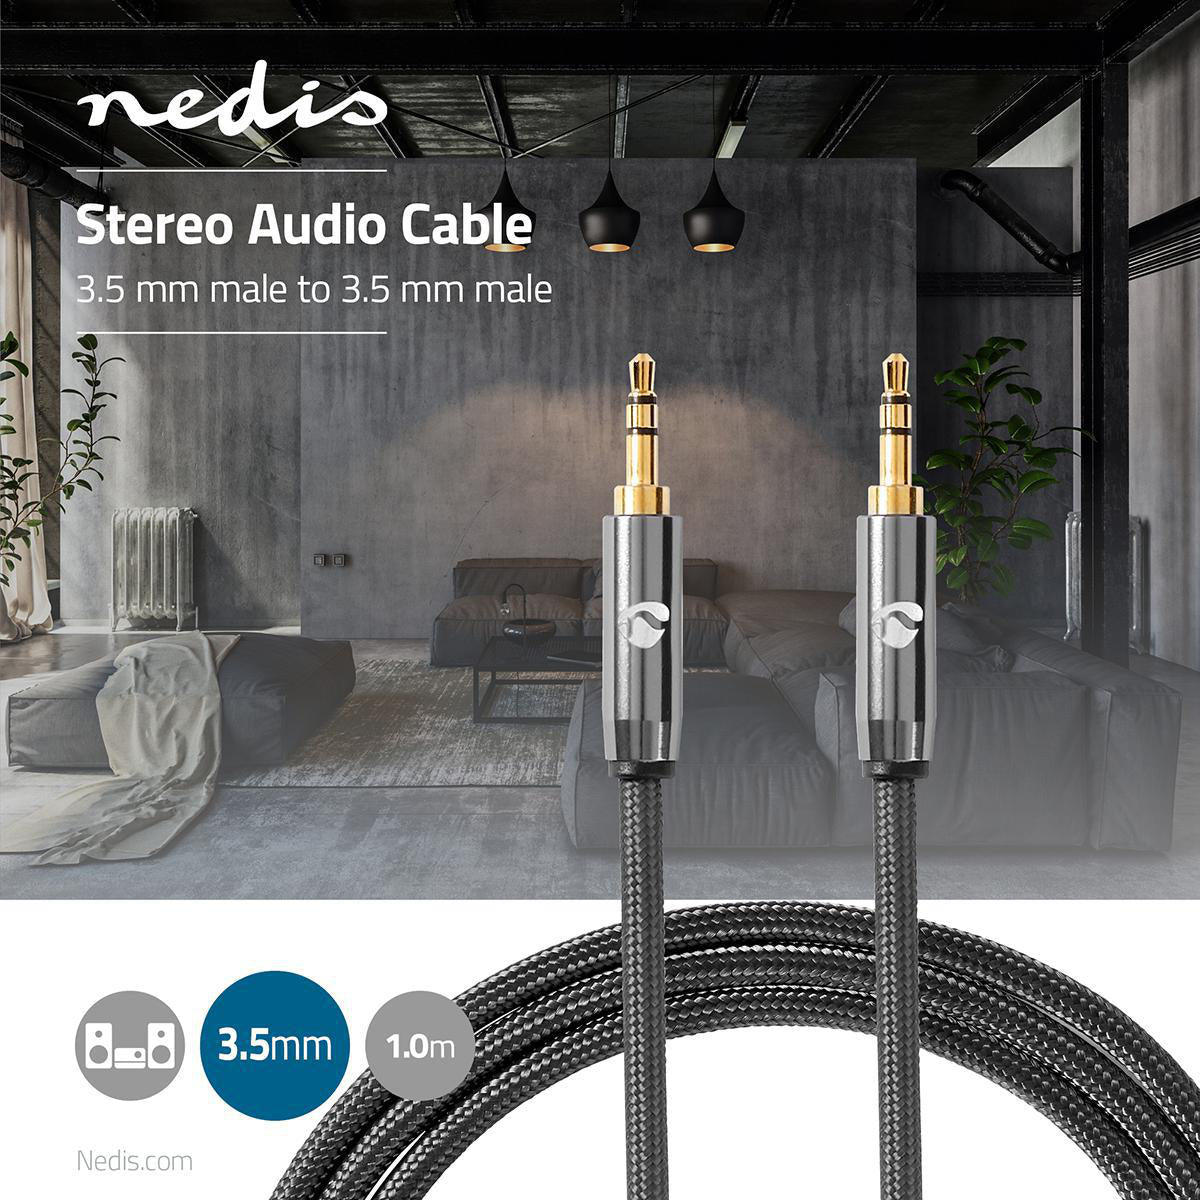 Stereo-Audiokabel | 3.5 mm Stecker | 3.5 mm Stecker | Vergoldet | 1.00 m | Rund | Anthrazit / Gun Metal Grau | Verpackung mit Sichtfenster